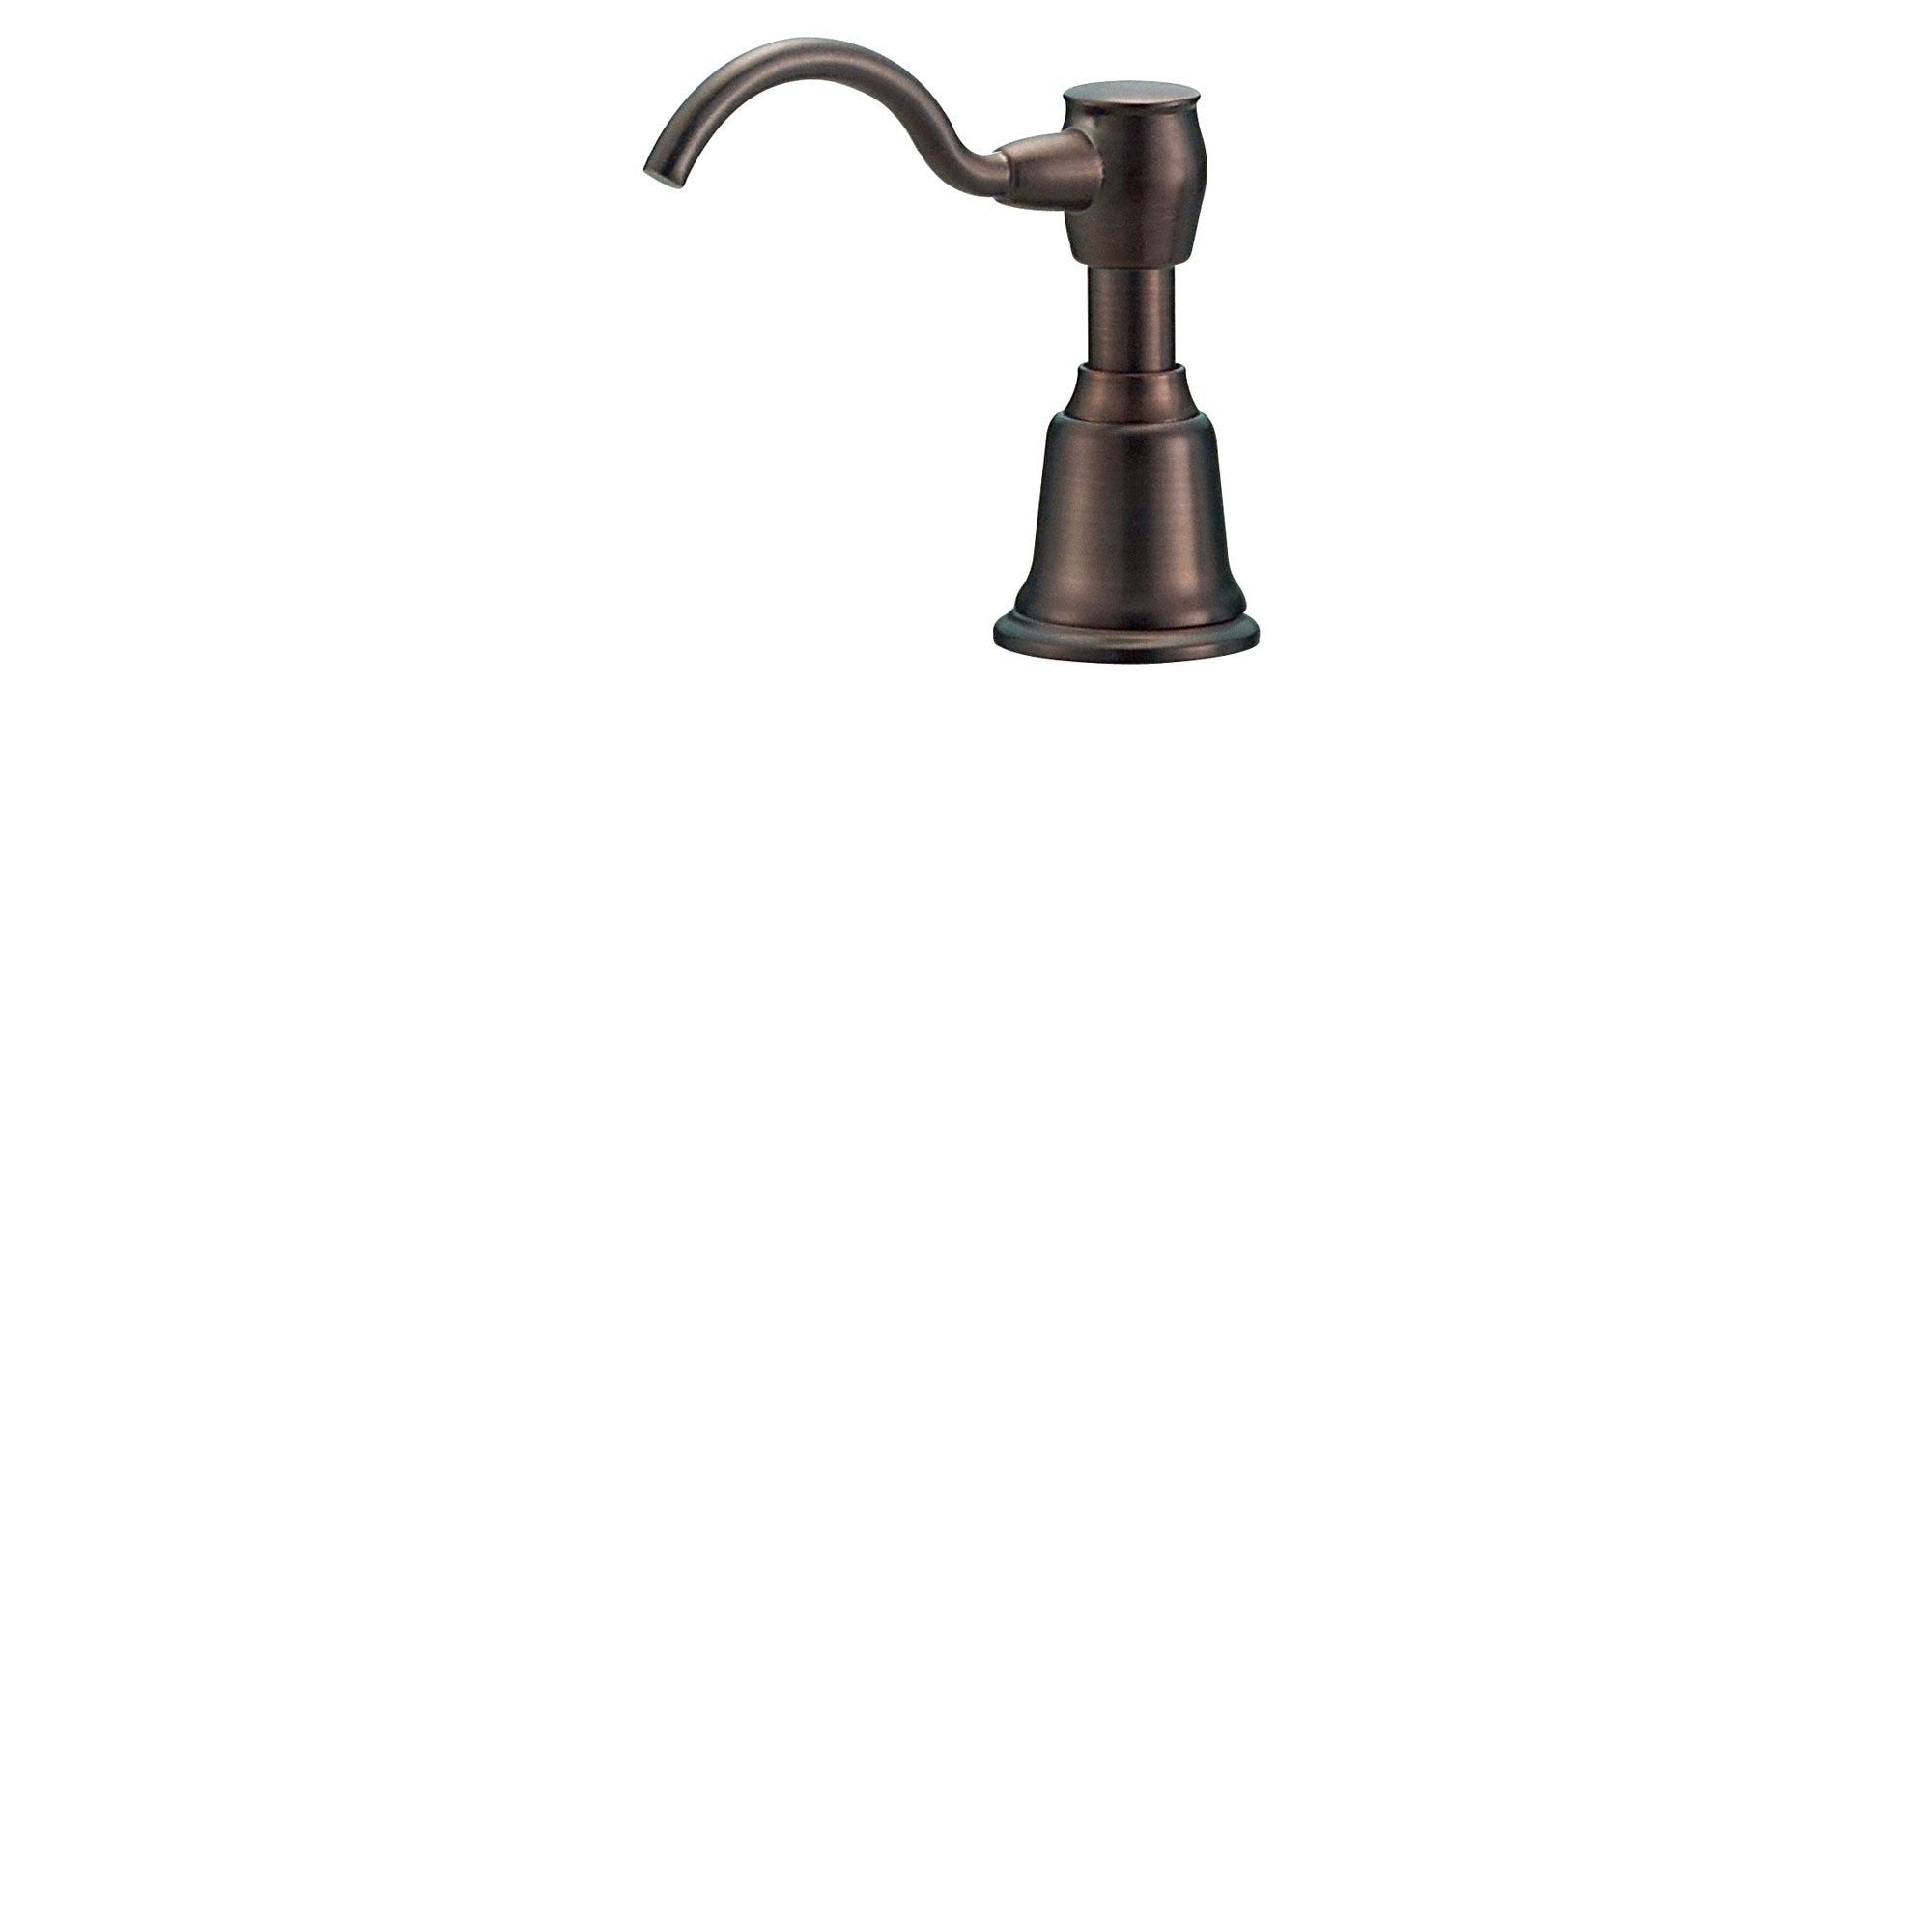 Danze Fairmont Oil Rubbed Bronze Finish Deck Mount Soap & Lotion Dispenser